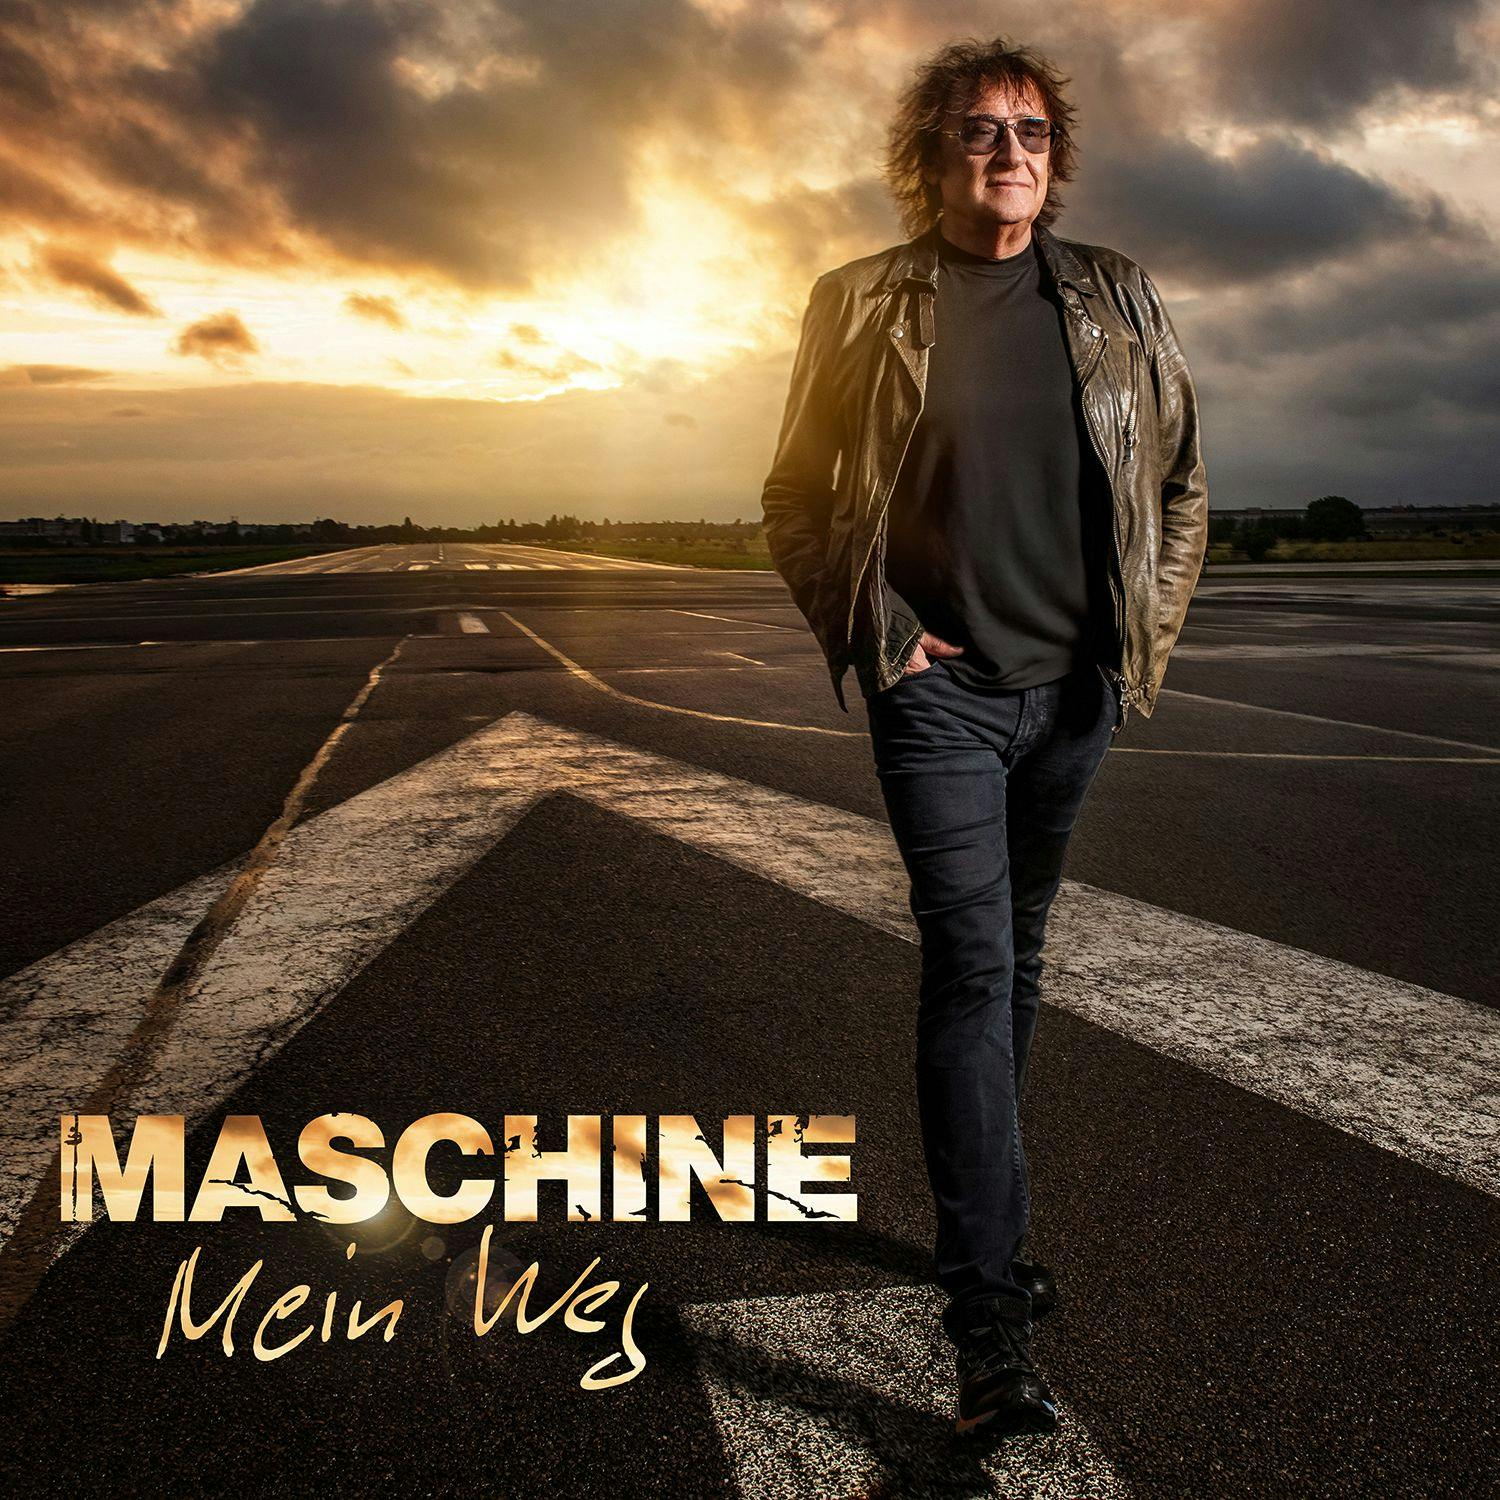 La copertina del nuovo album dei Maschinen 